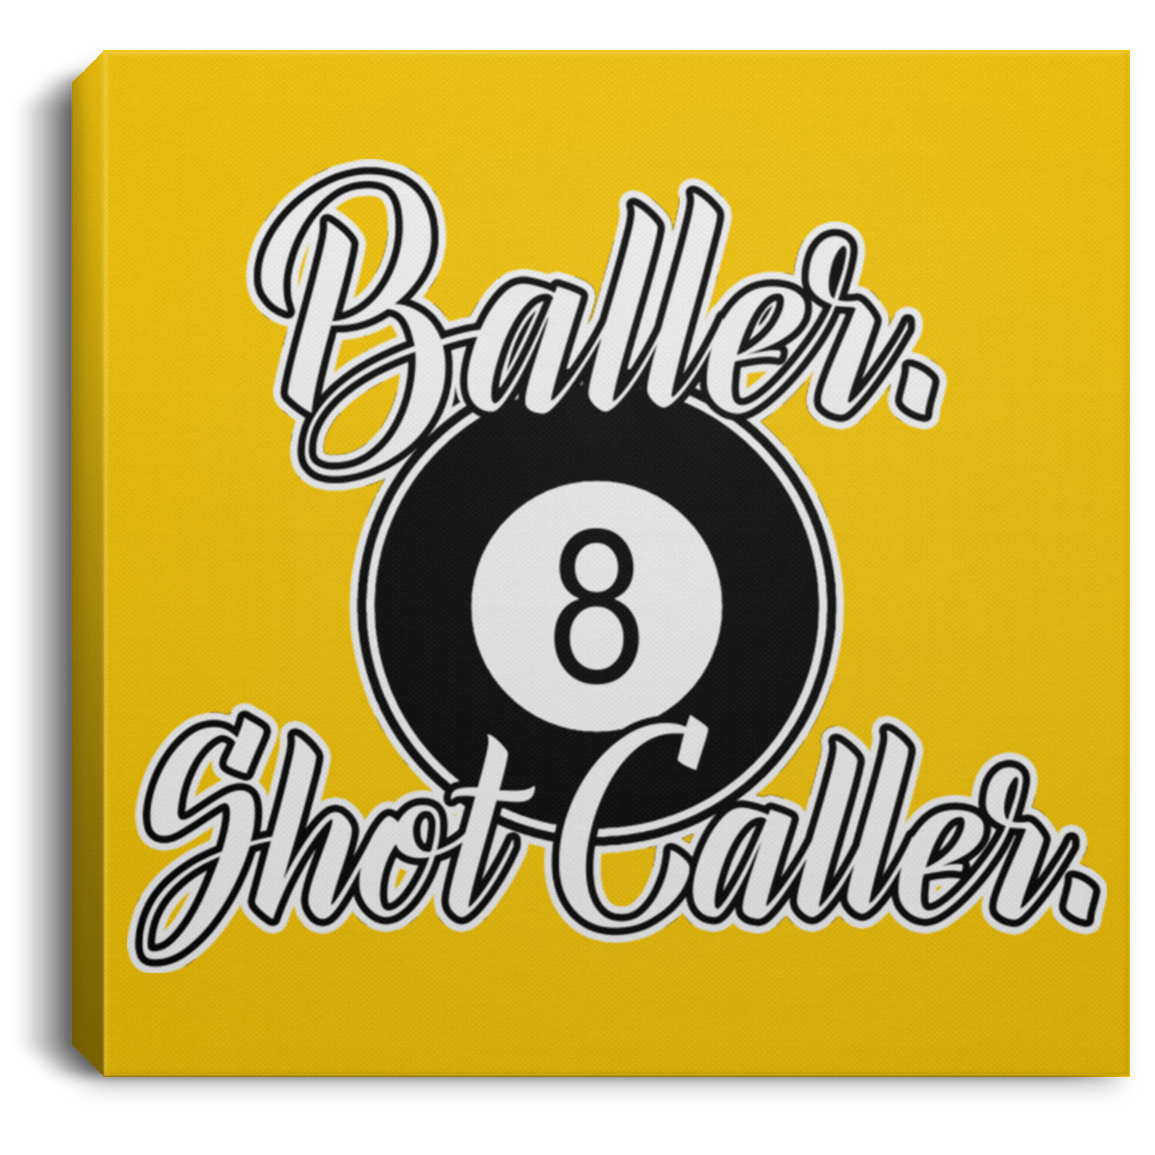 The GHOATS Custom Design #2. Baller. Shot Caller. Square Canvas .75in Frame